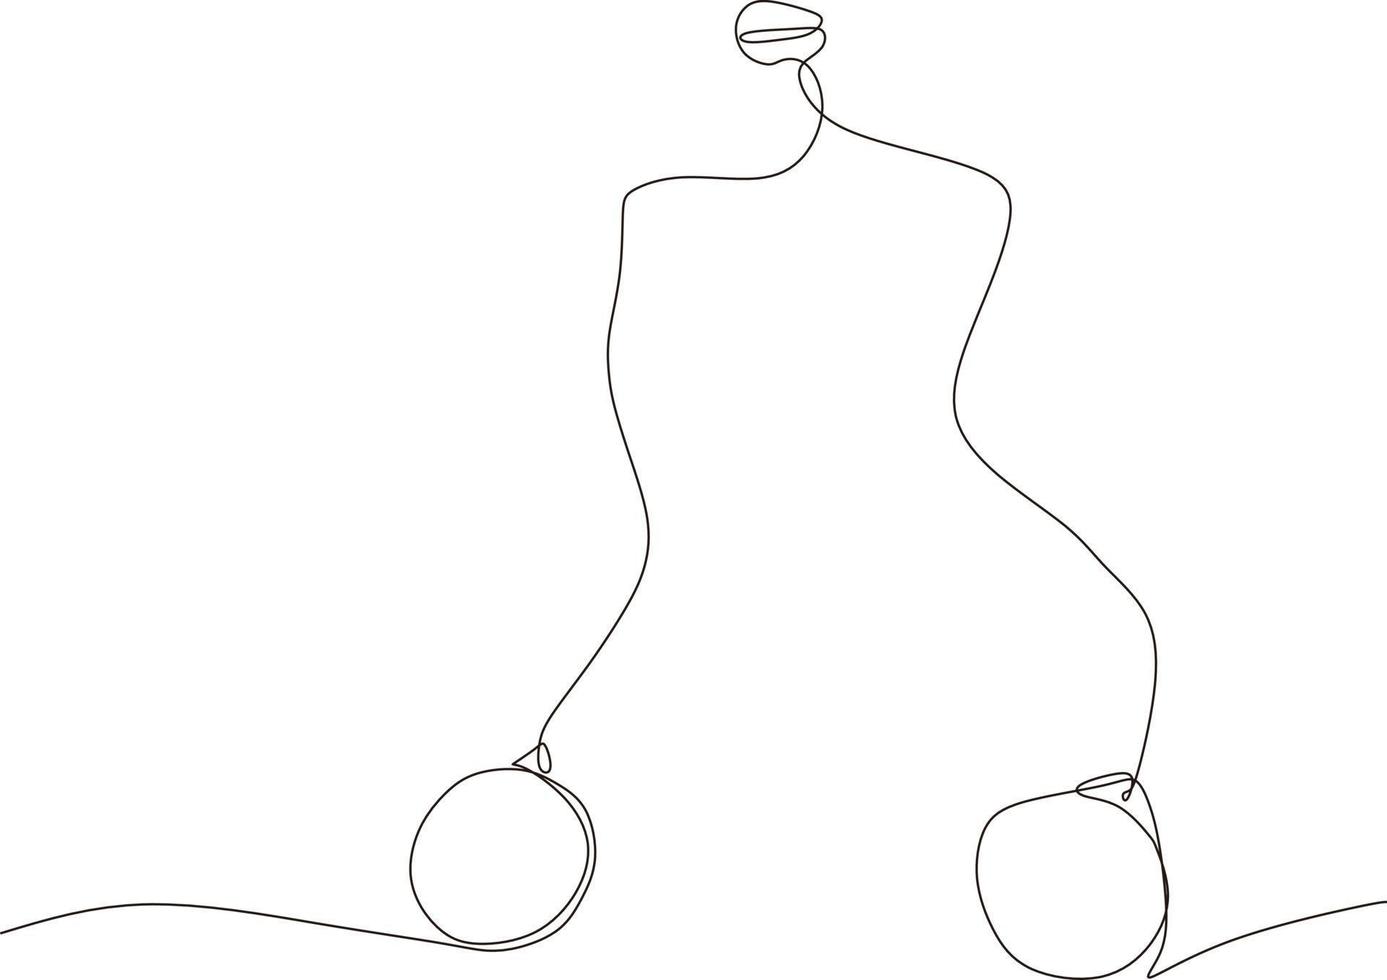 eine durchgehende linie aus schwarz-weißem lato lato auf einem kartonhintergrund, ein spielzeug, das derzeit in indonesien viral ist, steht im mittelpunkt von choice.vector,illustration vektor